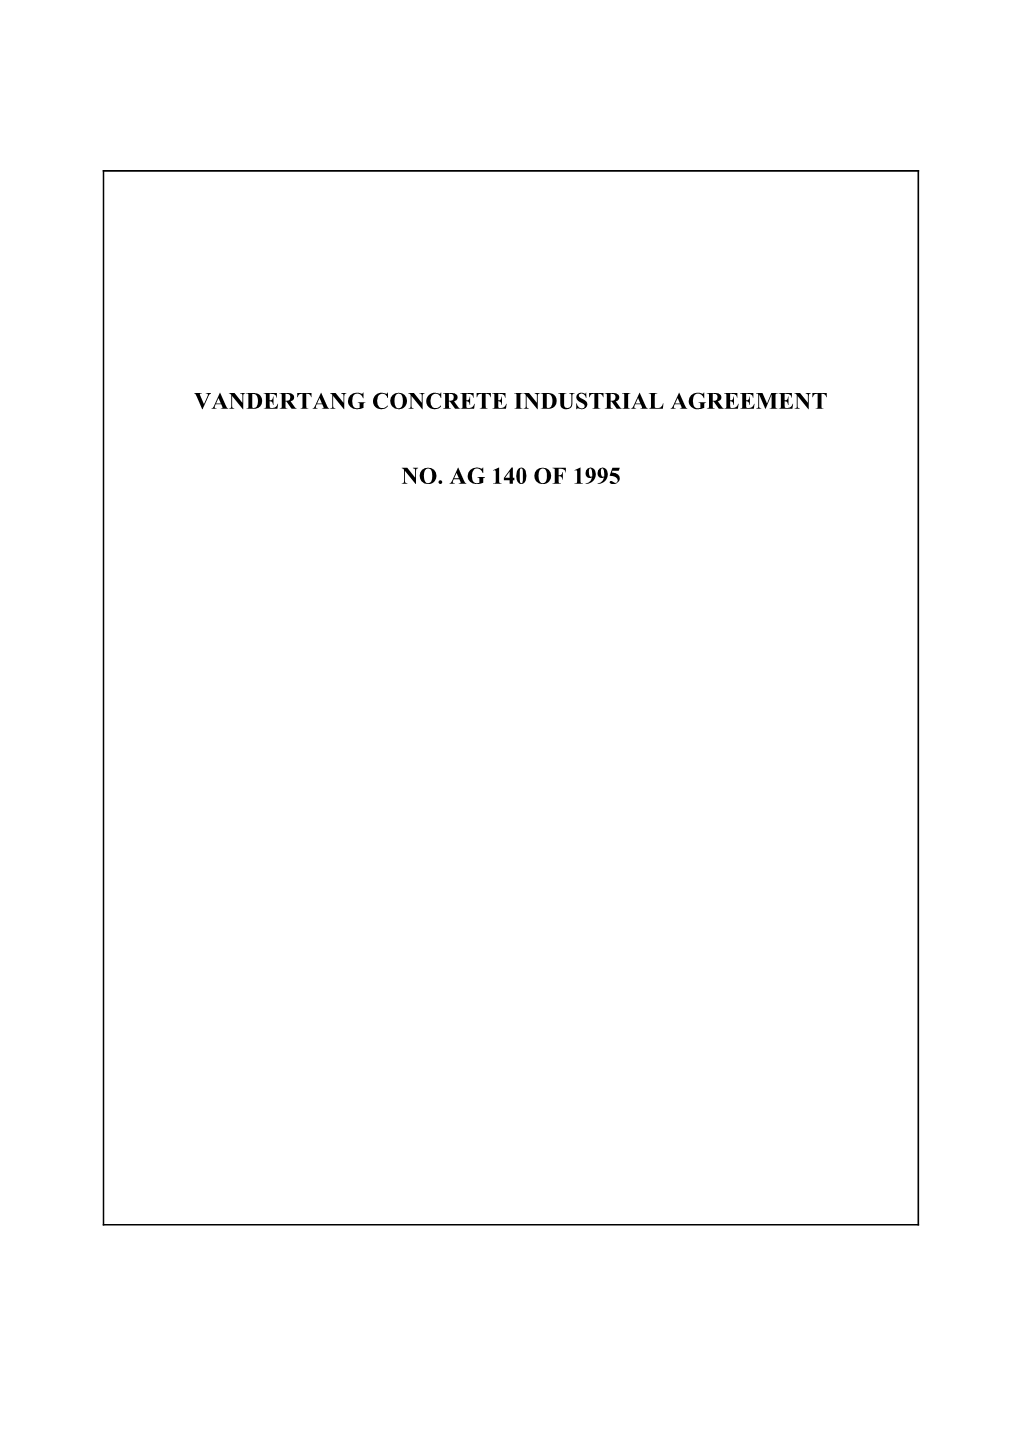 Vandertang Concrete Industrial Agreement